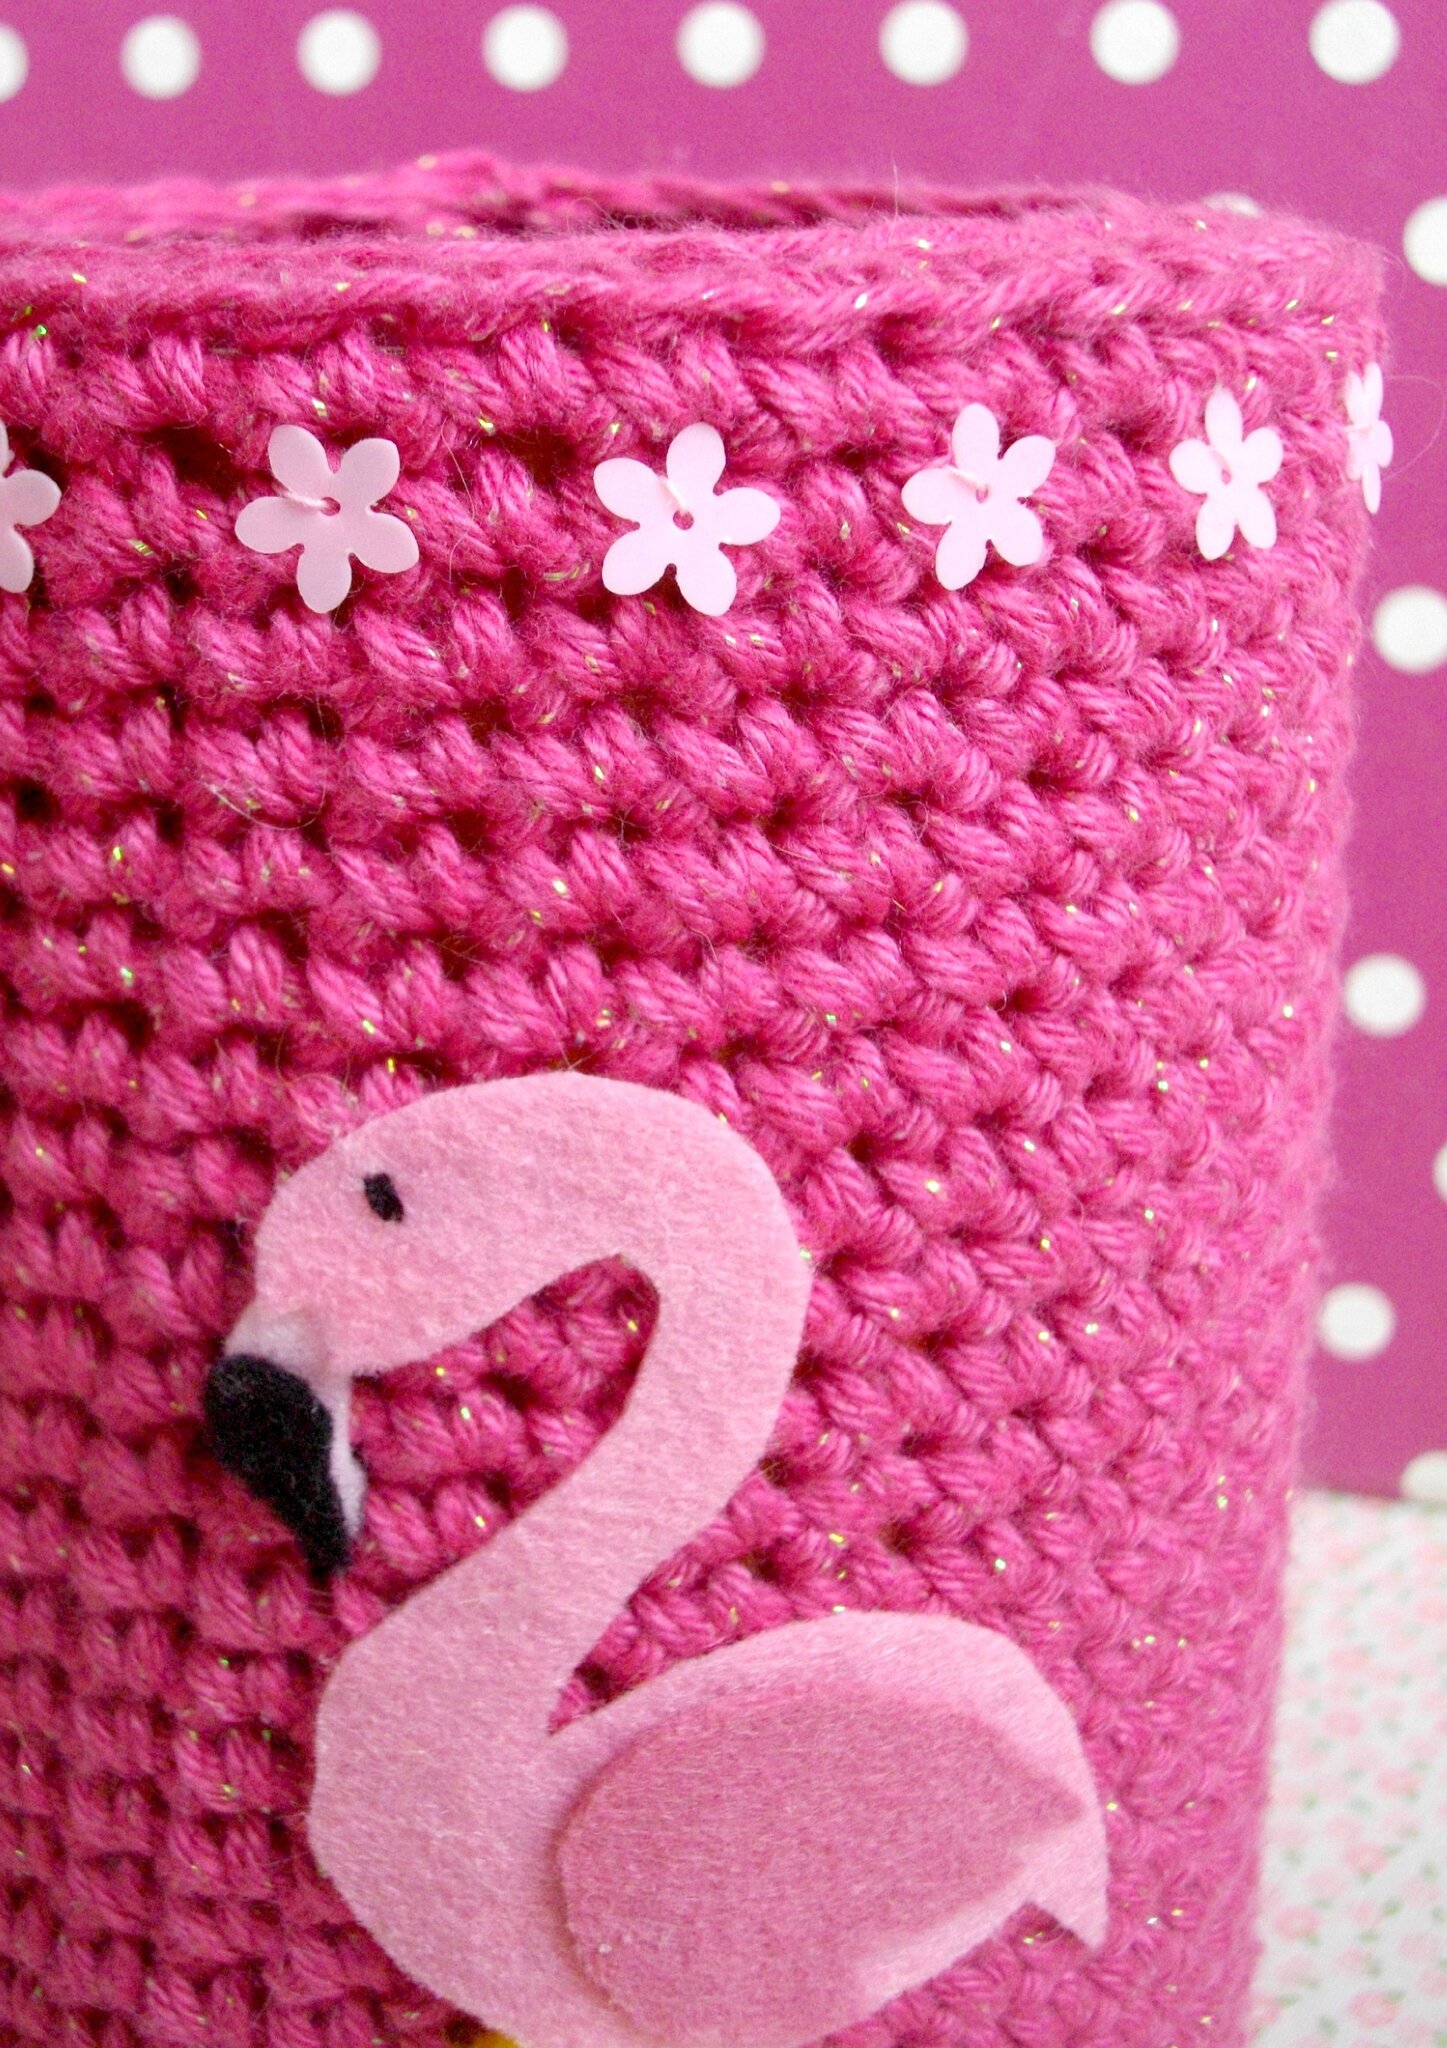 flamant-rose-pink-flamingo-sequins-fleurs-flower-paillettes-the-serial-crocheteuses